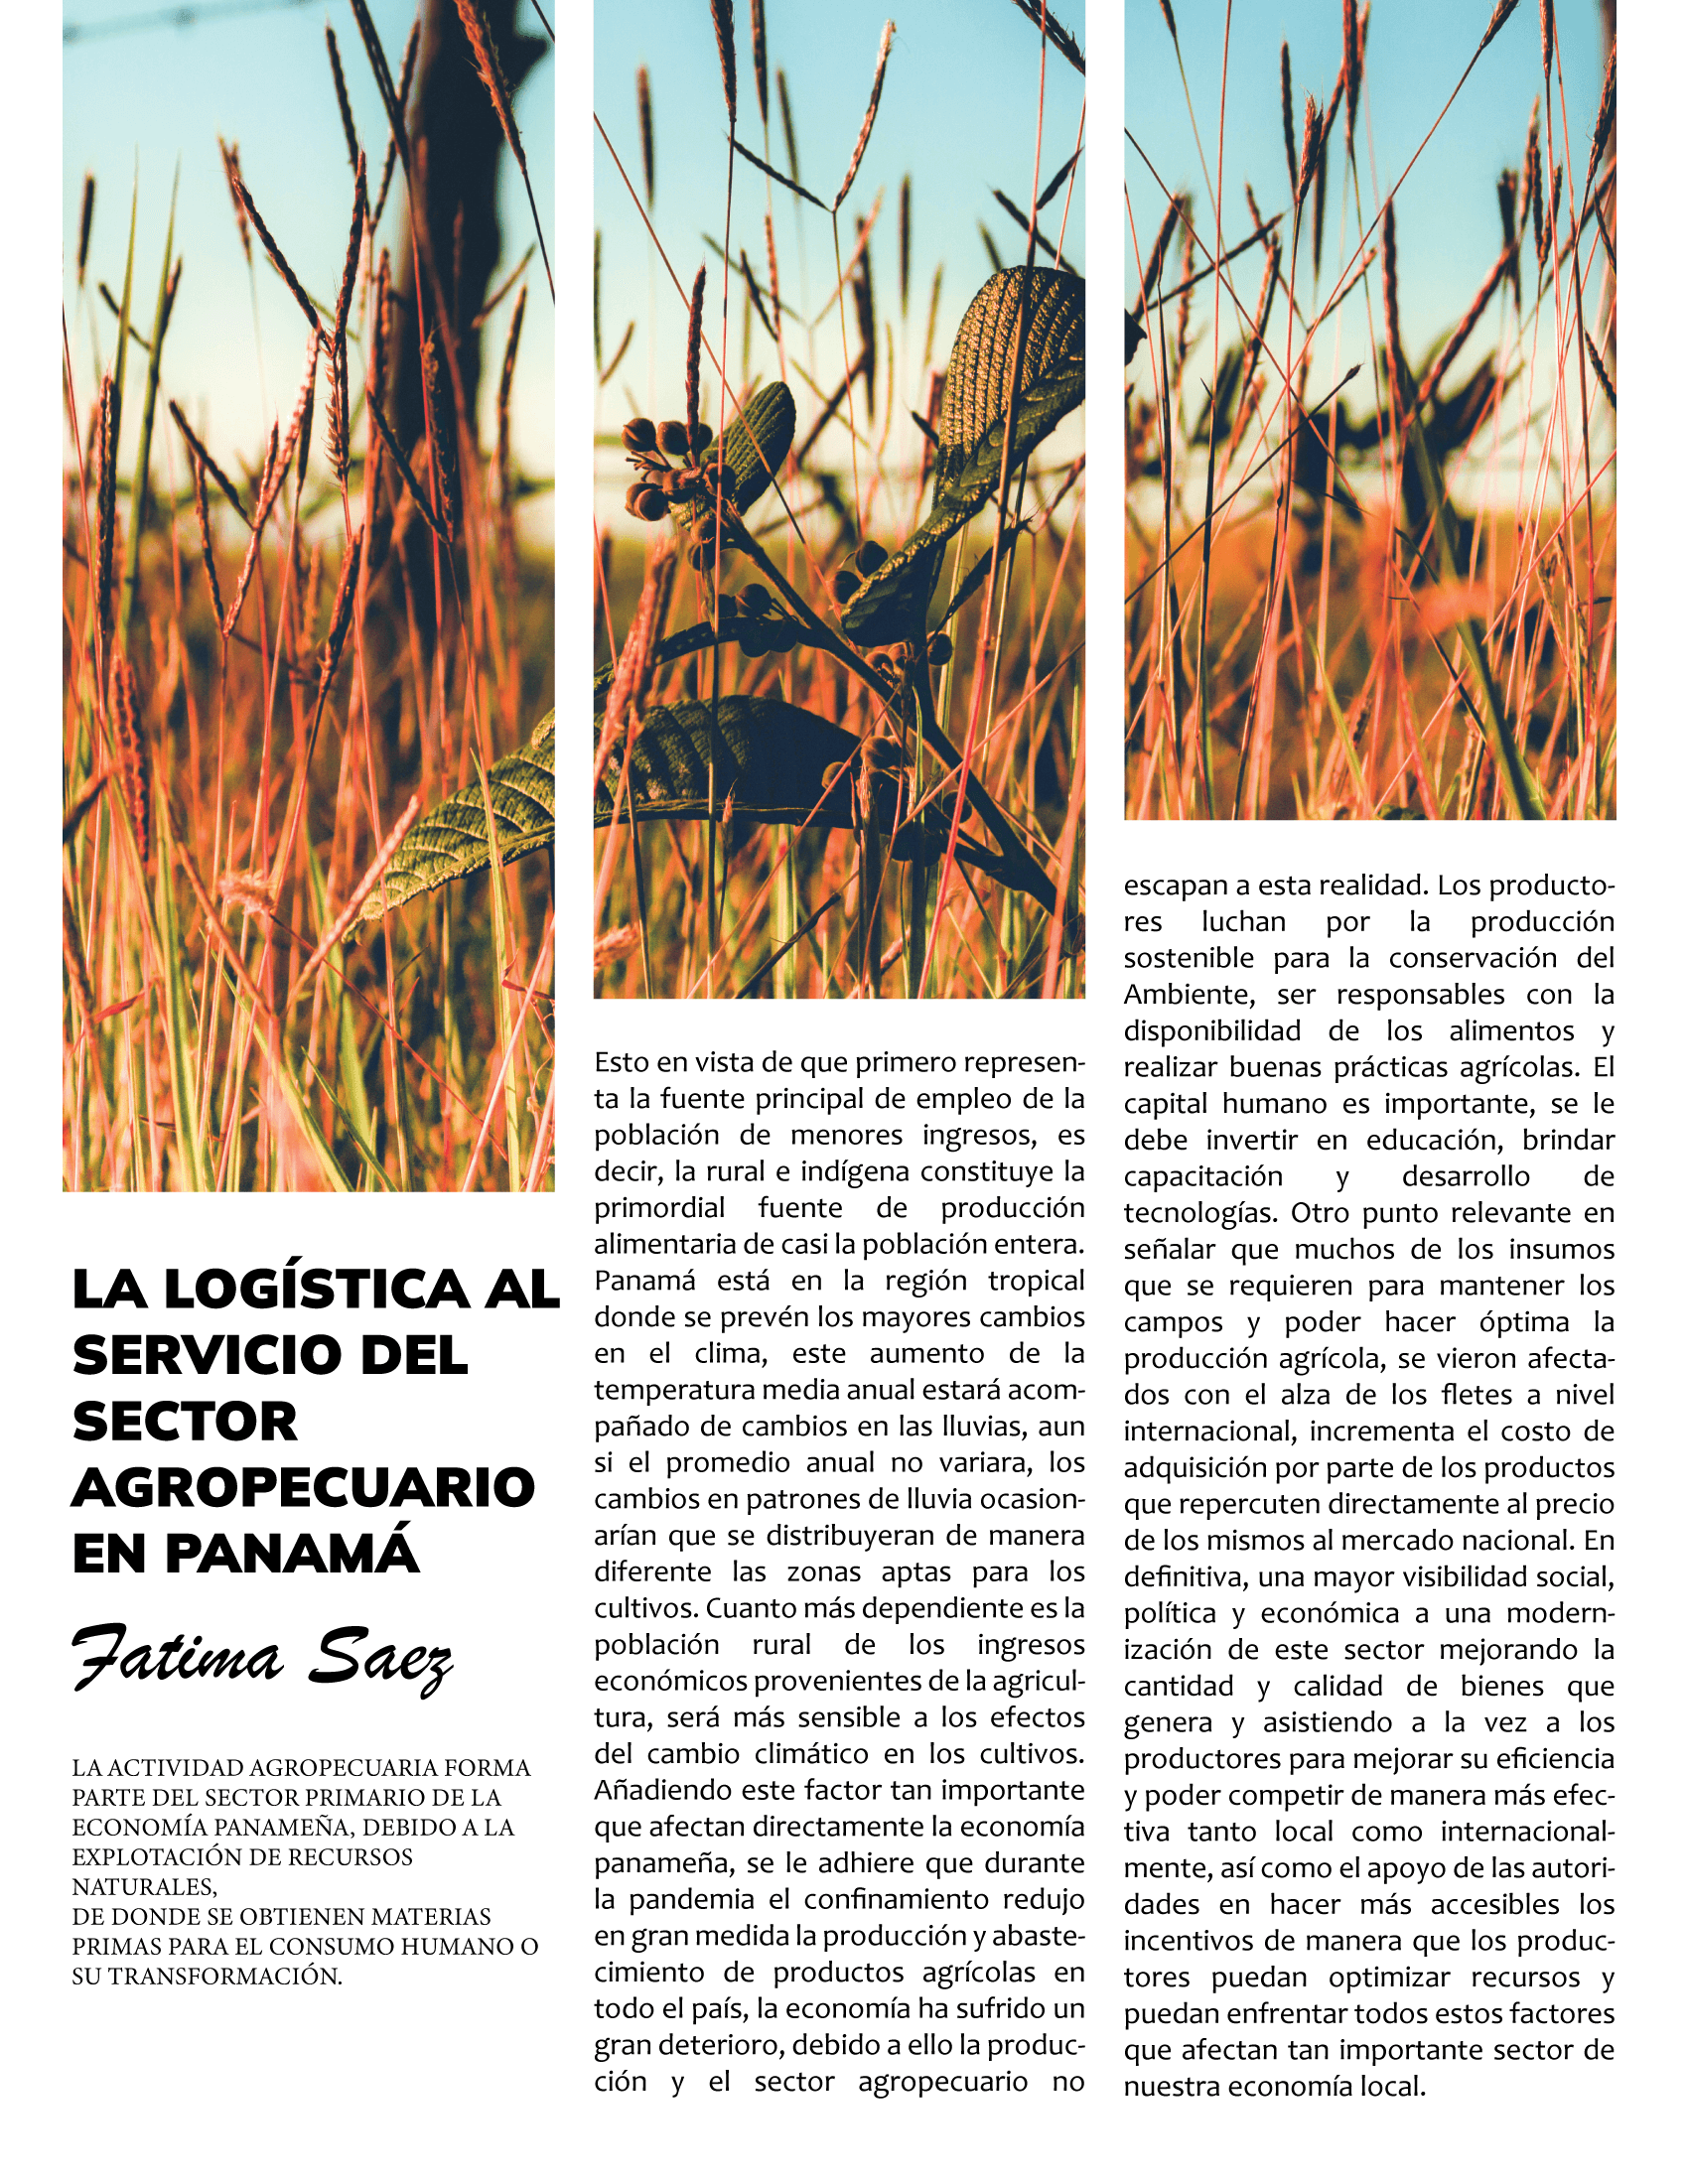 La Lógistica al servicio del sector Agropecuario en Panamá